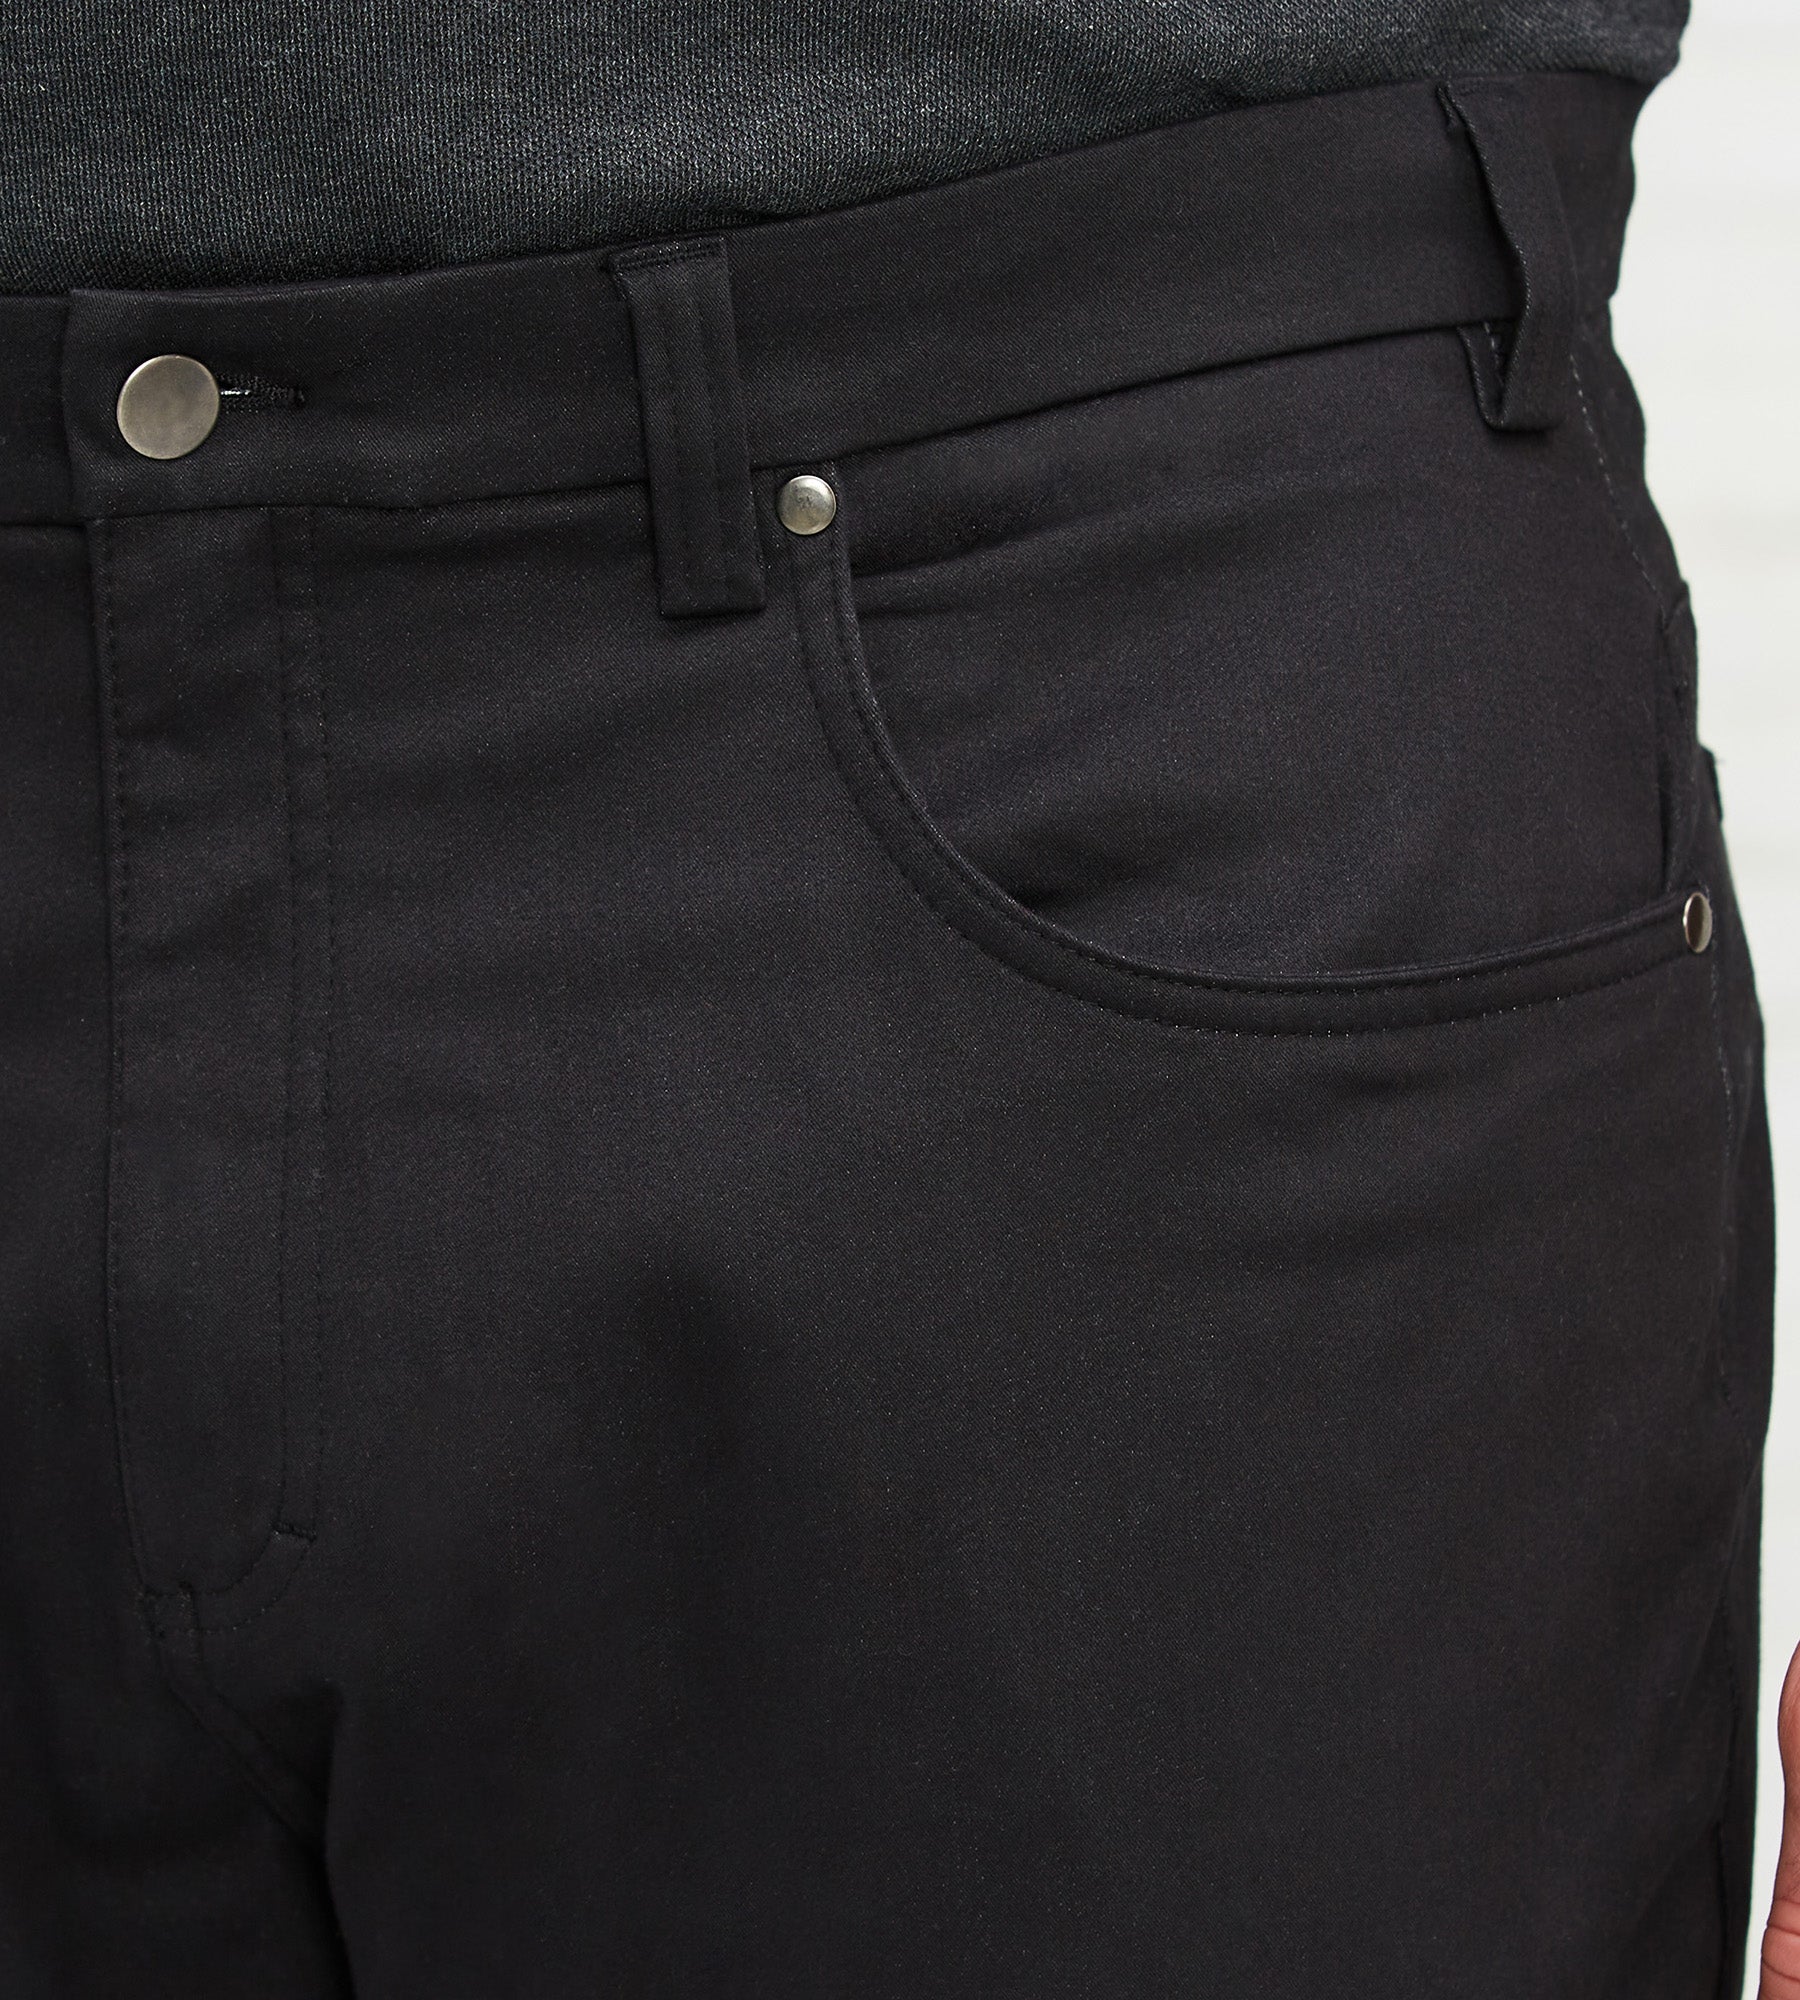 Ultimate Five-Pocket Pants – George Richards